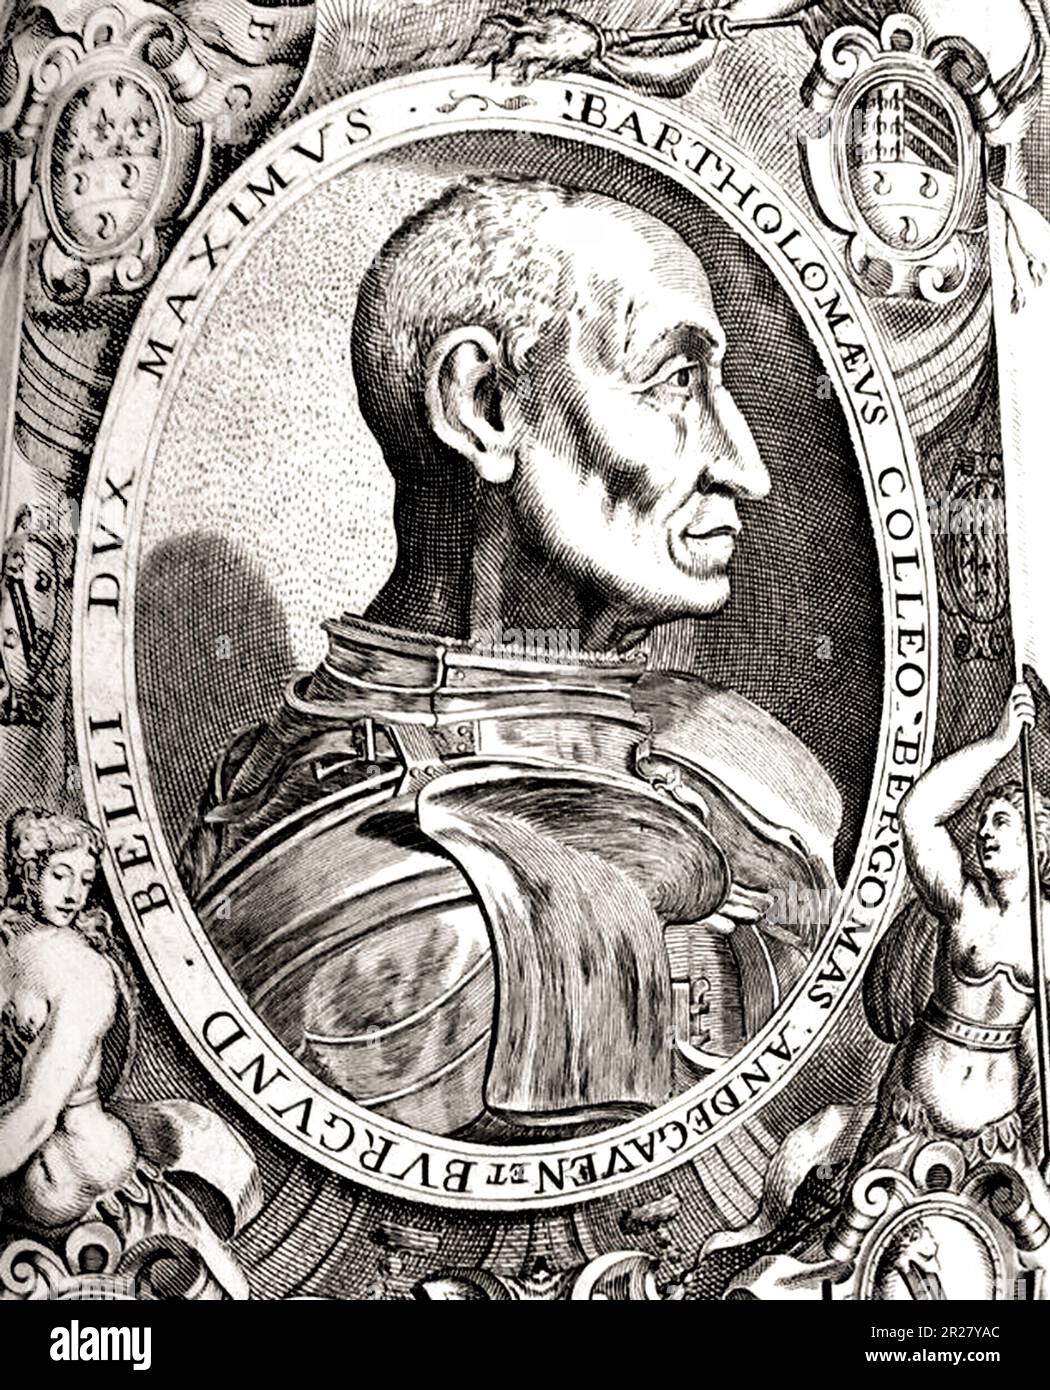 1470 ca , Bergamo , ITALY : The italian Condottiero BARTOLOMEO COLLEONI ( 1395 - 1475 ). Engraved portrait from XVI Century . - CONDOTTIERO - PORTRAIT - RITRATTO - ITALIA - Capitano di Ventura - Generale - ritratto - incisione - illustrazione - illustration - profilo - profile - RINASCIMENTO - RENAISSANCE - armure - armatura  - HISTORY - FOTO STORICHE ---  Archivio GBB Stock Photo